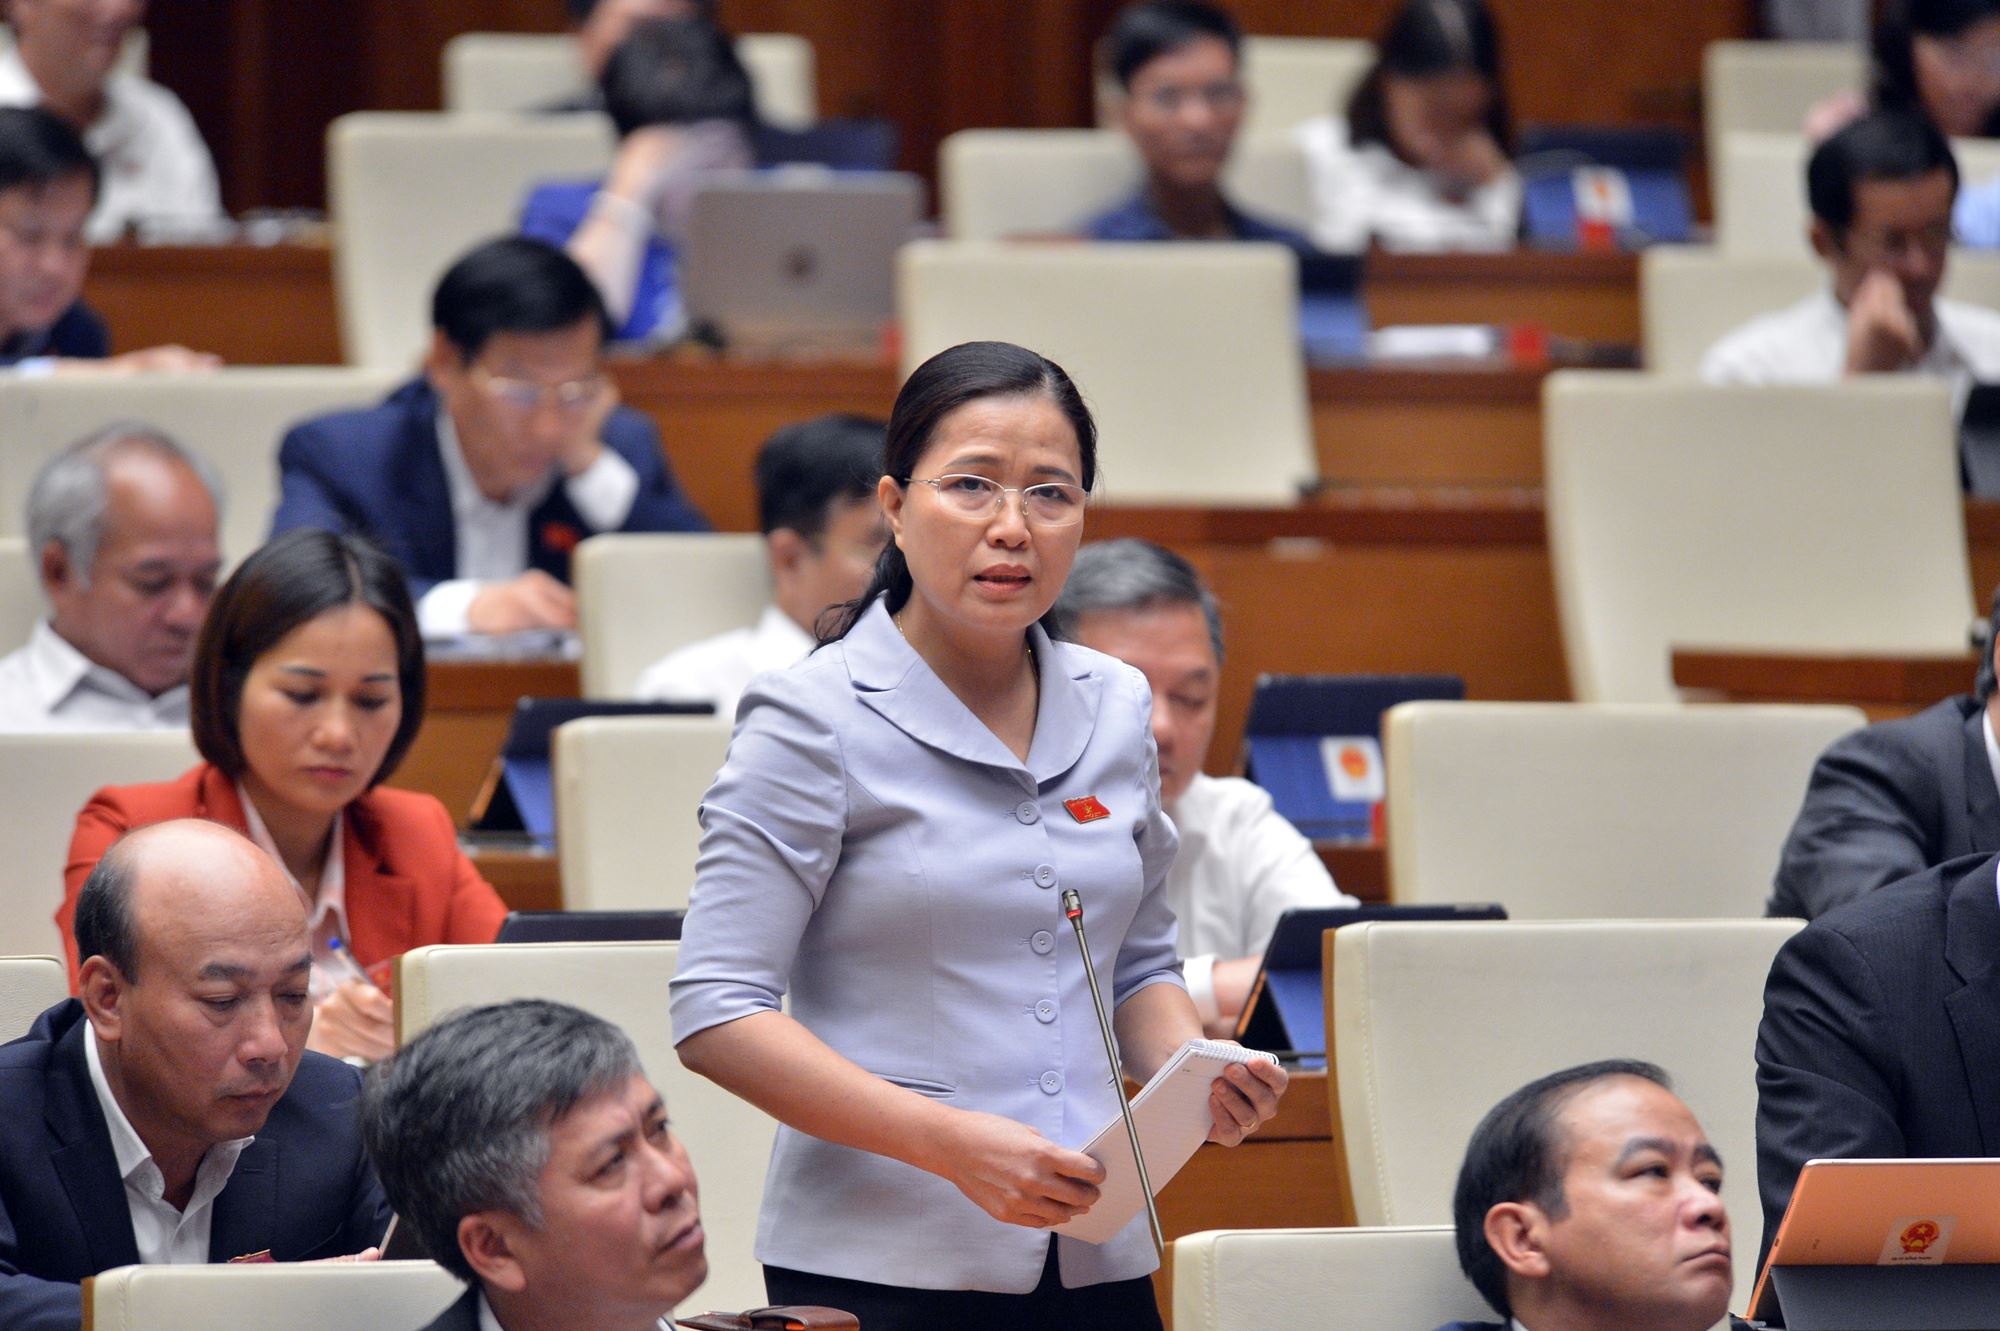 Đại biểu Đỗ Thị Lan, Ủy viên Thường trực Ủy ban về các vấn đề xã hội của Quốc hội khóa XIV, ĐBQH tỉnh Quảng Ninh đã chất vấn thành viên Chính phủ về vấn đề đầu tư kè biên giới.